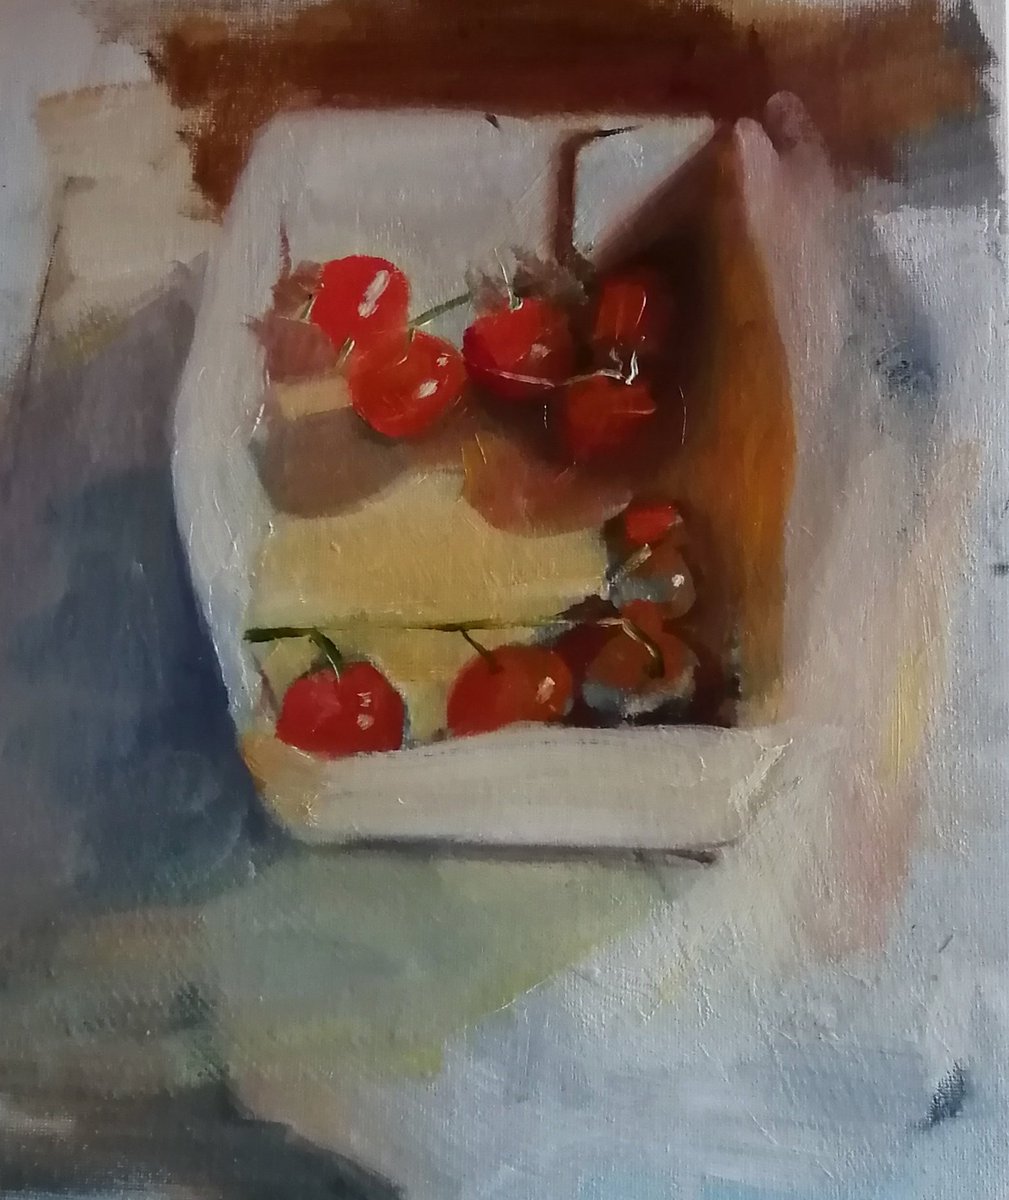 Box of tomatoes, day 1... Oil on board. rosemaryburnartist.com

#art #artgallery #artcollector #dailypainter #stilllife #contemporarystilllifepainting #oilpainting #figurativepainting #dailypainter #contemporarypainting #britishpainting #tomatoes #wip